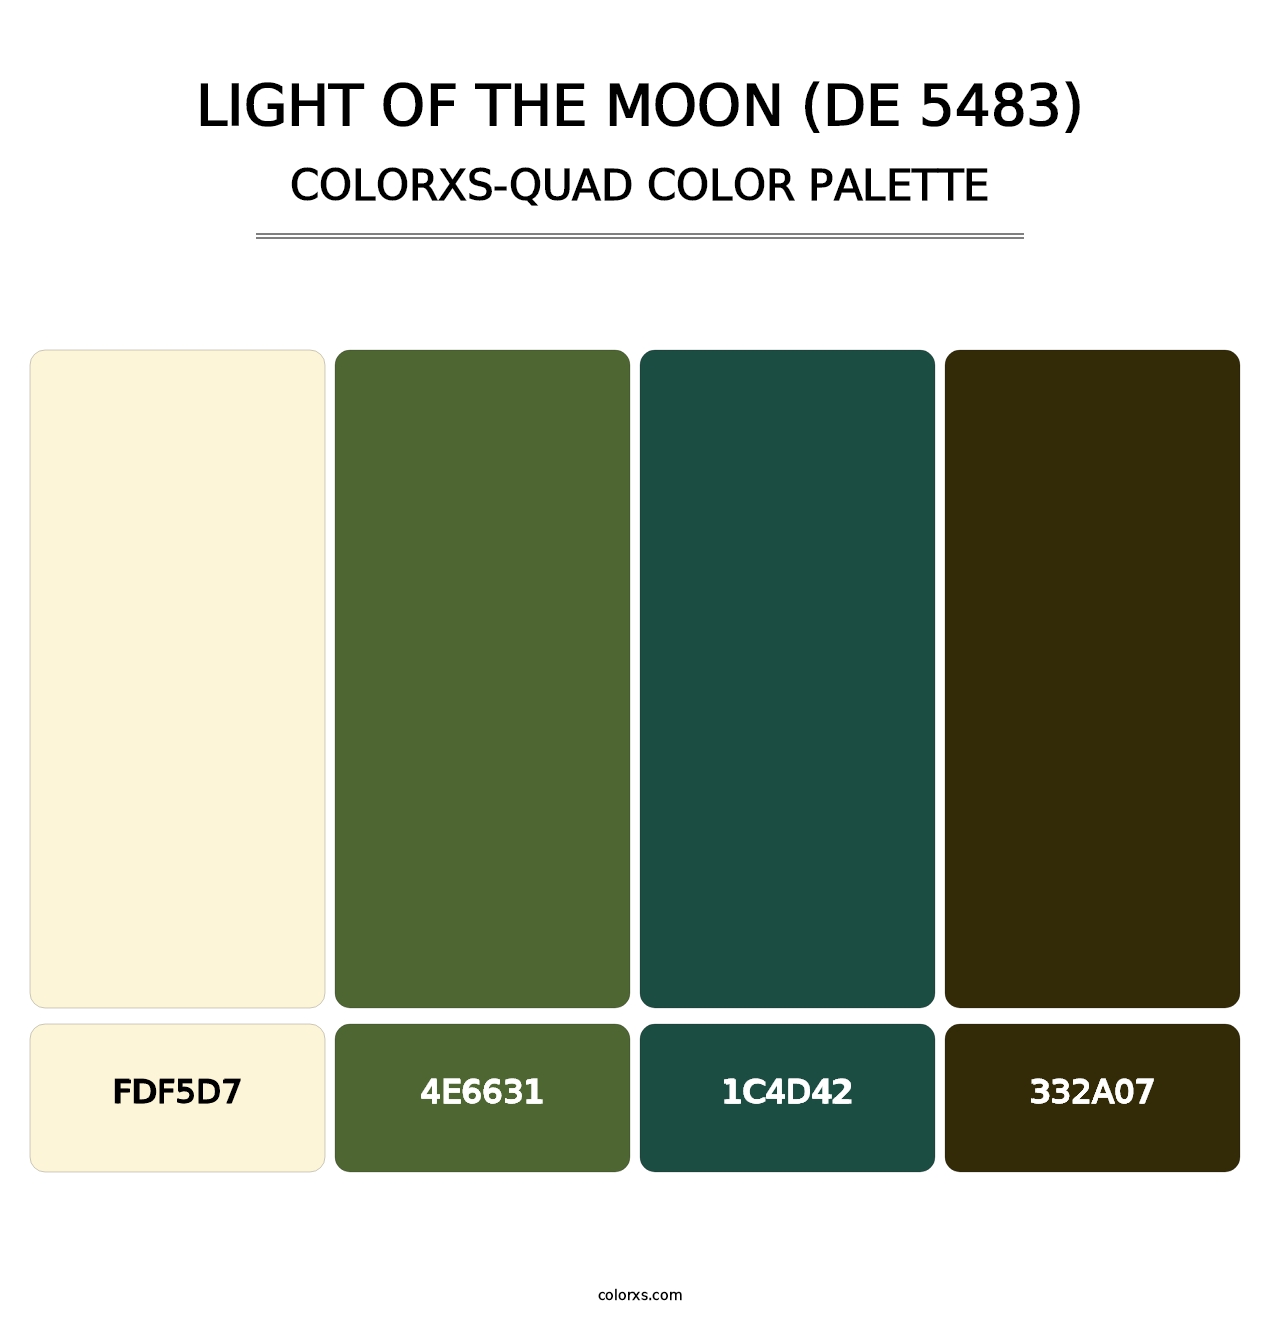 Light of the Moon (DE 5483) - Colorxs Quad Palette